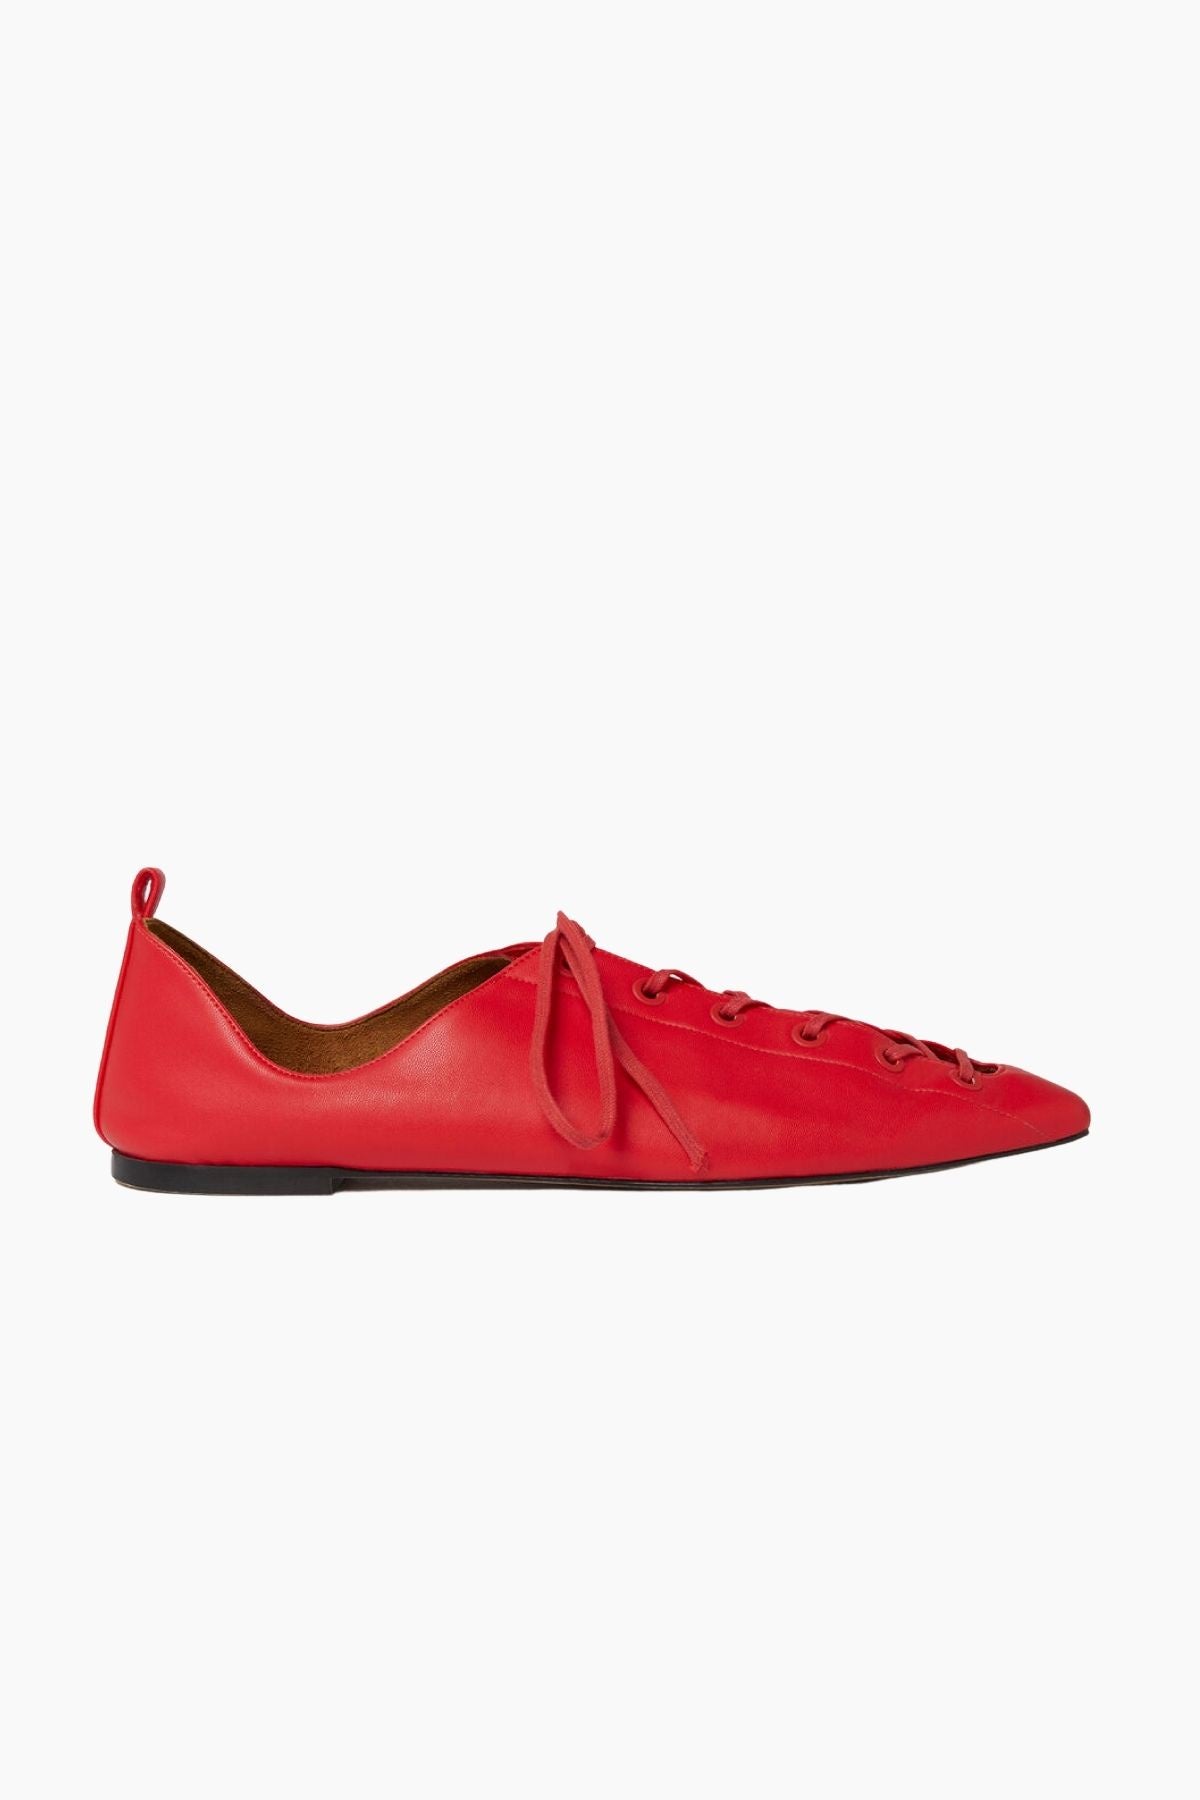 Stella McCartney Terra Laced Alter Mat Ballerina Flats - Red